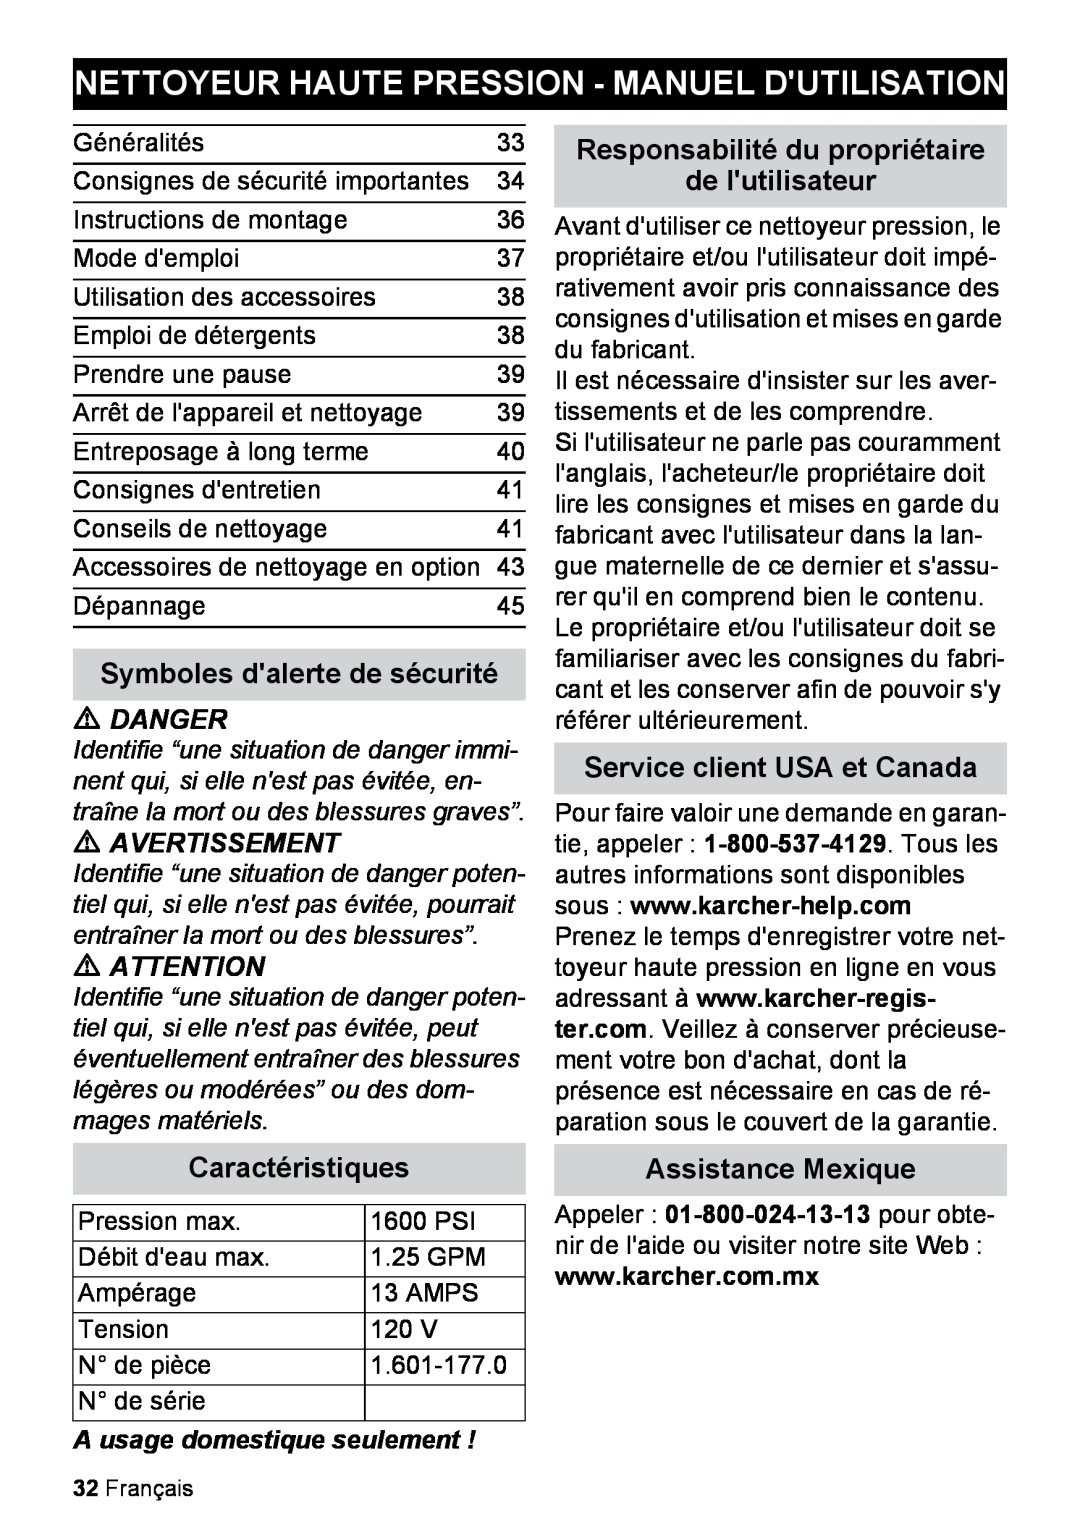 Karcher K 2.27 Nettoyeur Haute Pression - Manuel Dutilisation, Symboles dalerte de sécurité, Service client USA et Canada 